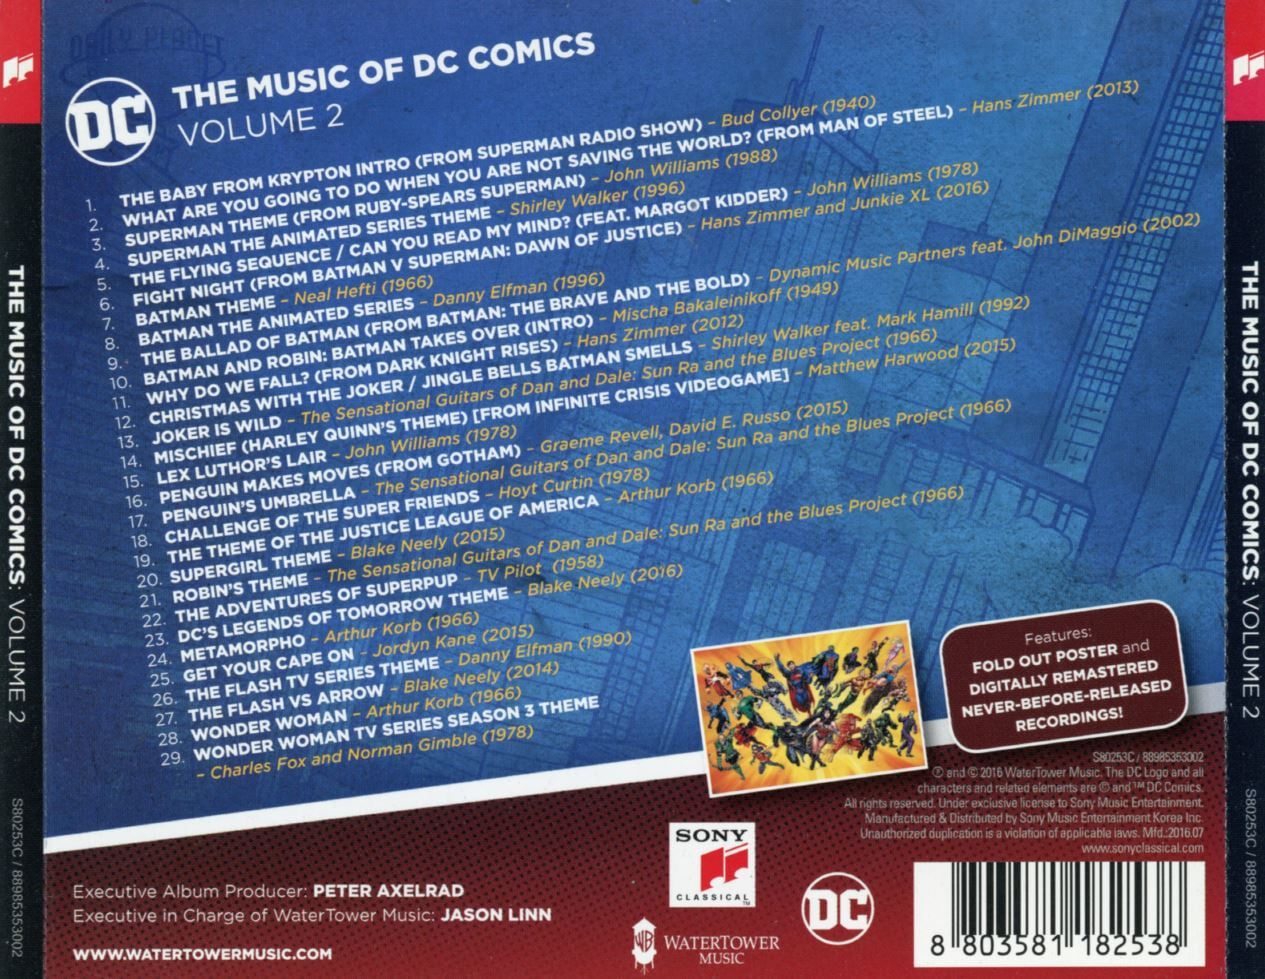 뮤직 오브 디씨 코믹스 볼륨 2 - The Music Of DC Comics Volume 2